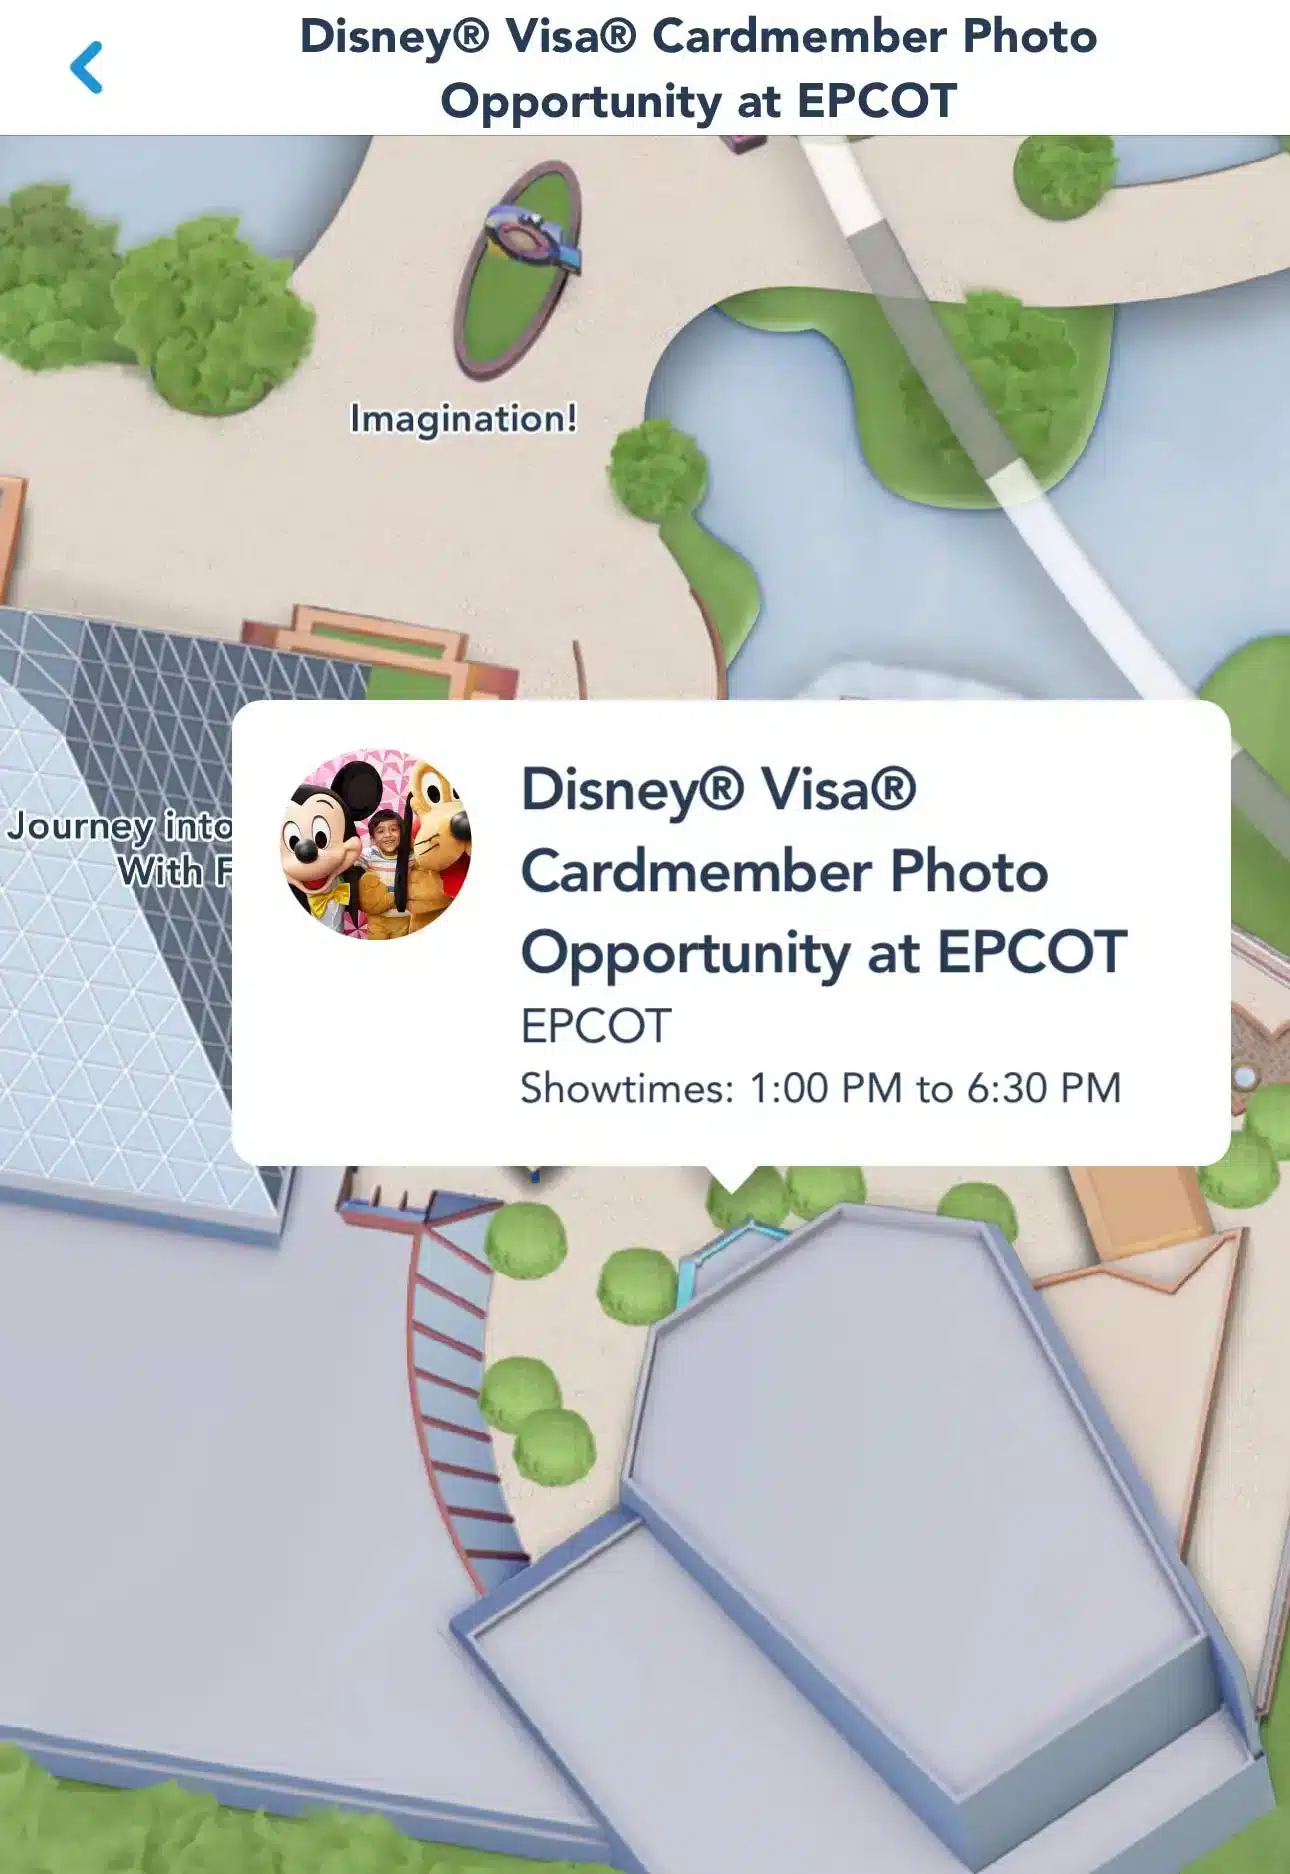 Disney Visa Cardmember Photo Op at EPCOT Map